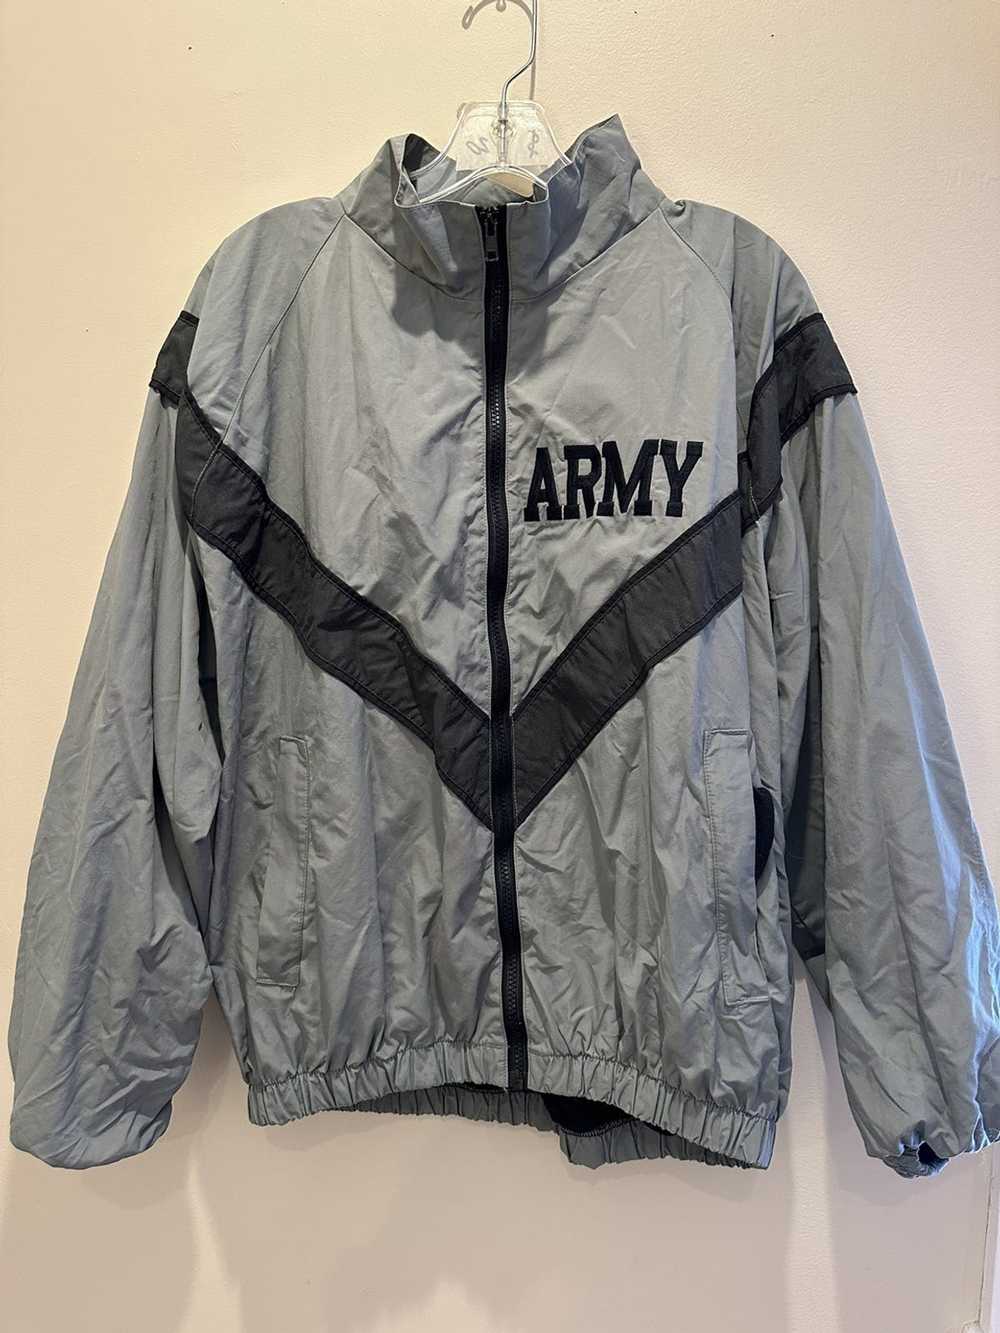 Military × Streetwear × Vintage Army Jacket - image 1